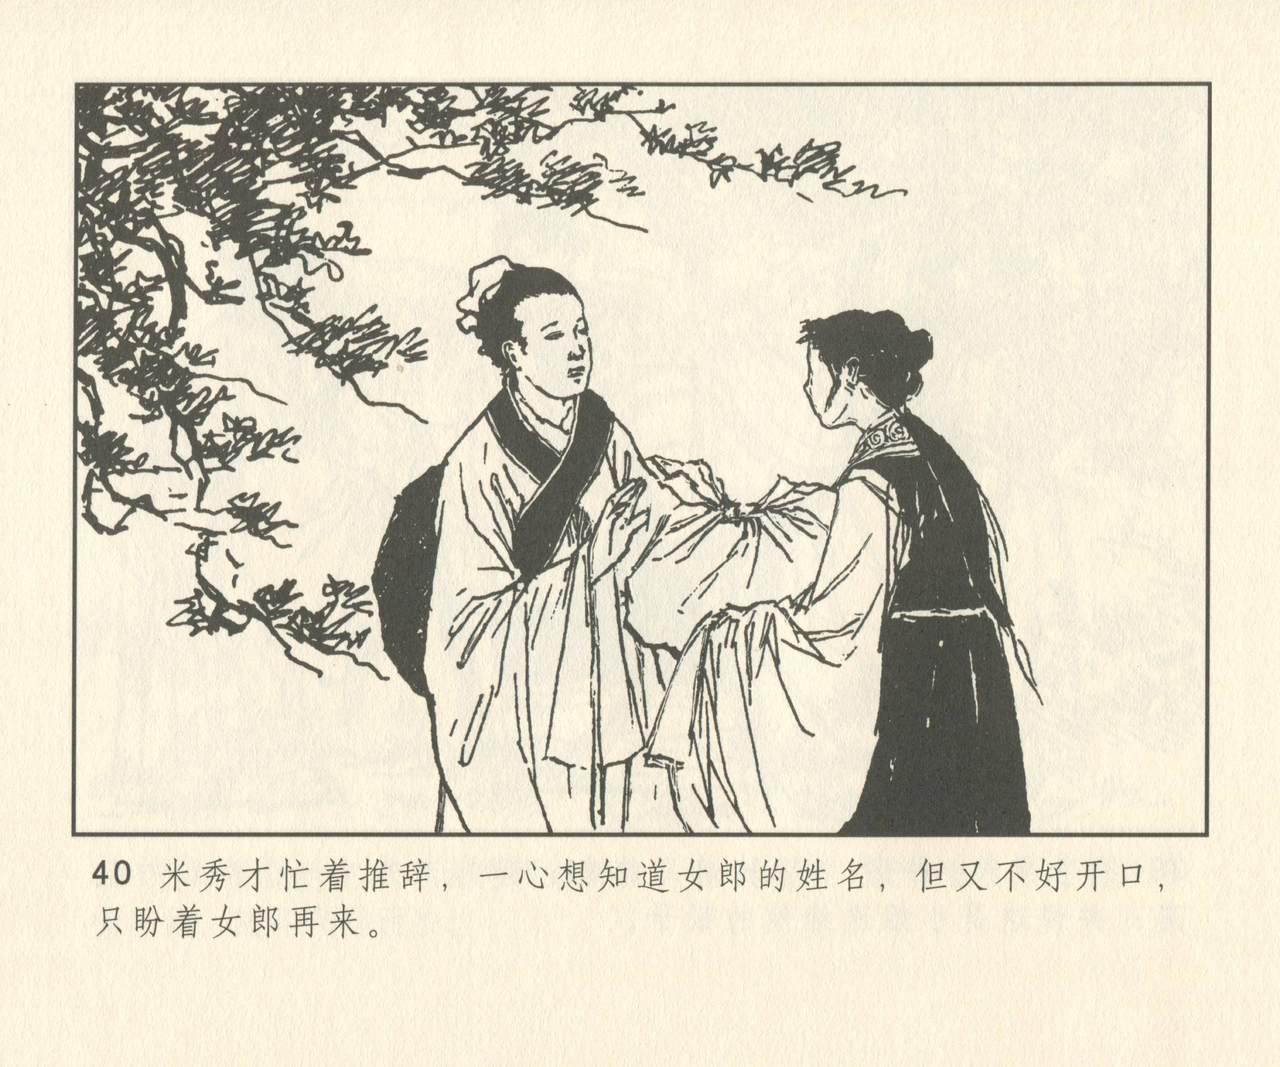 聊斋志异 张玮等绘 天津人民美术出版社 卷二十一 ~ 三十 168